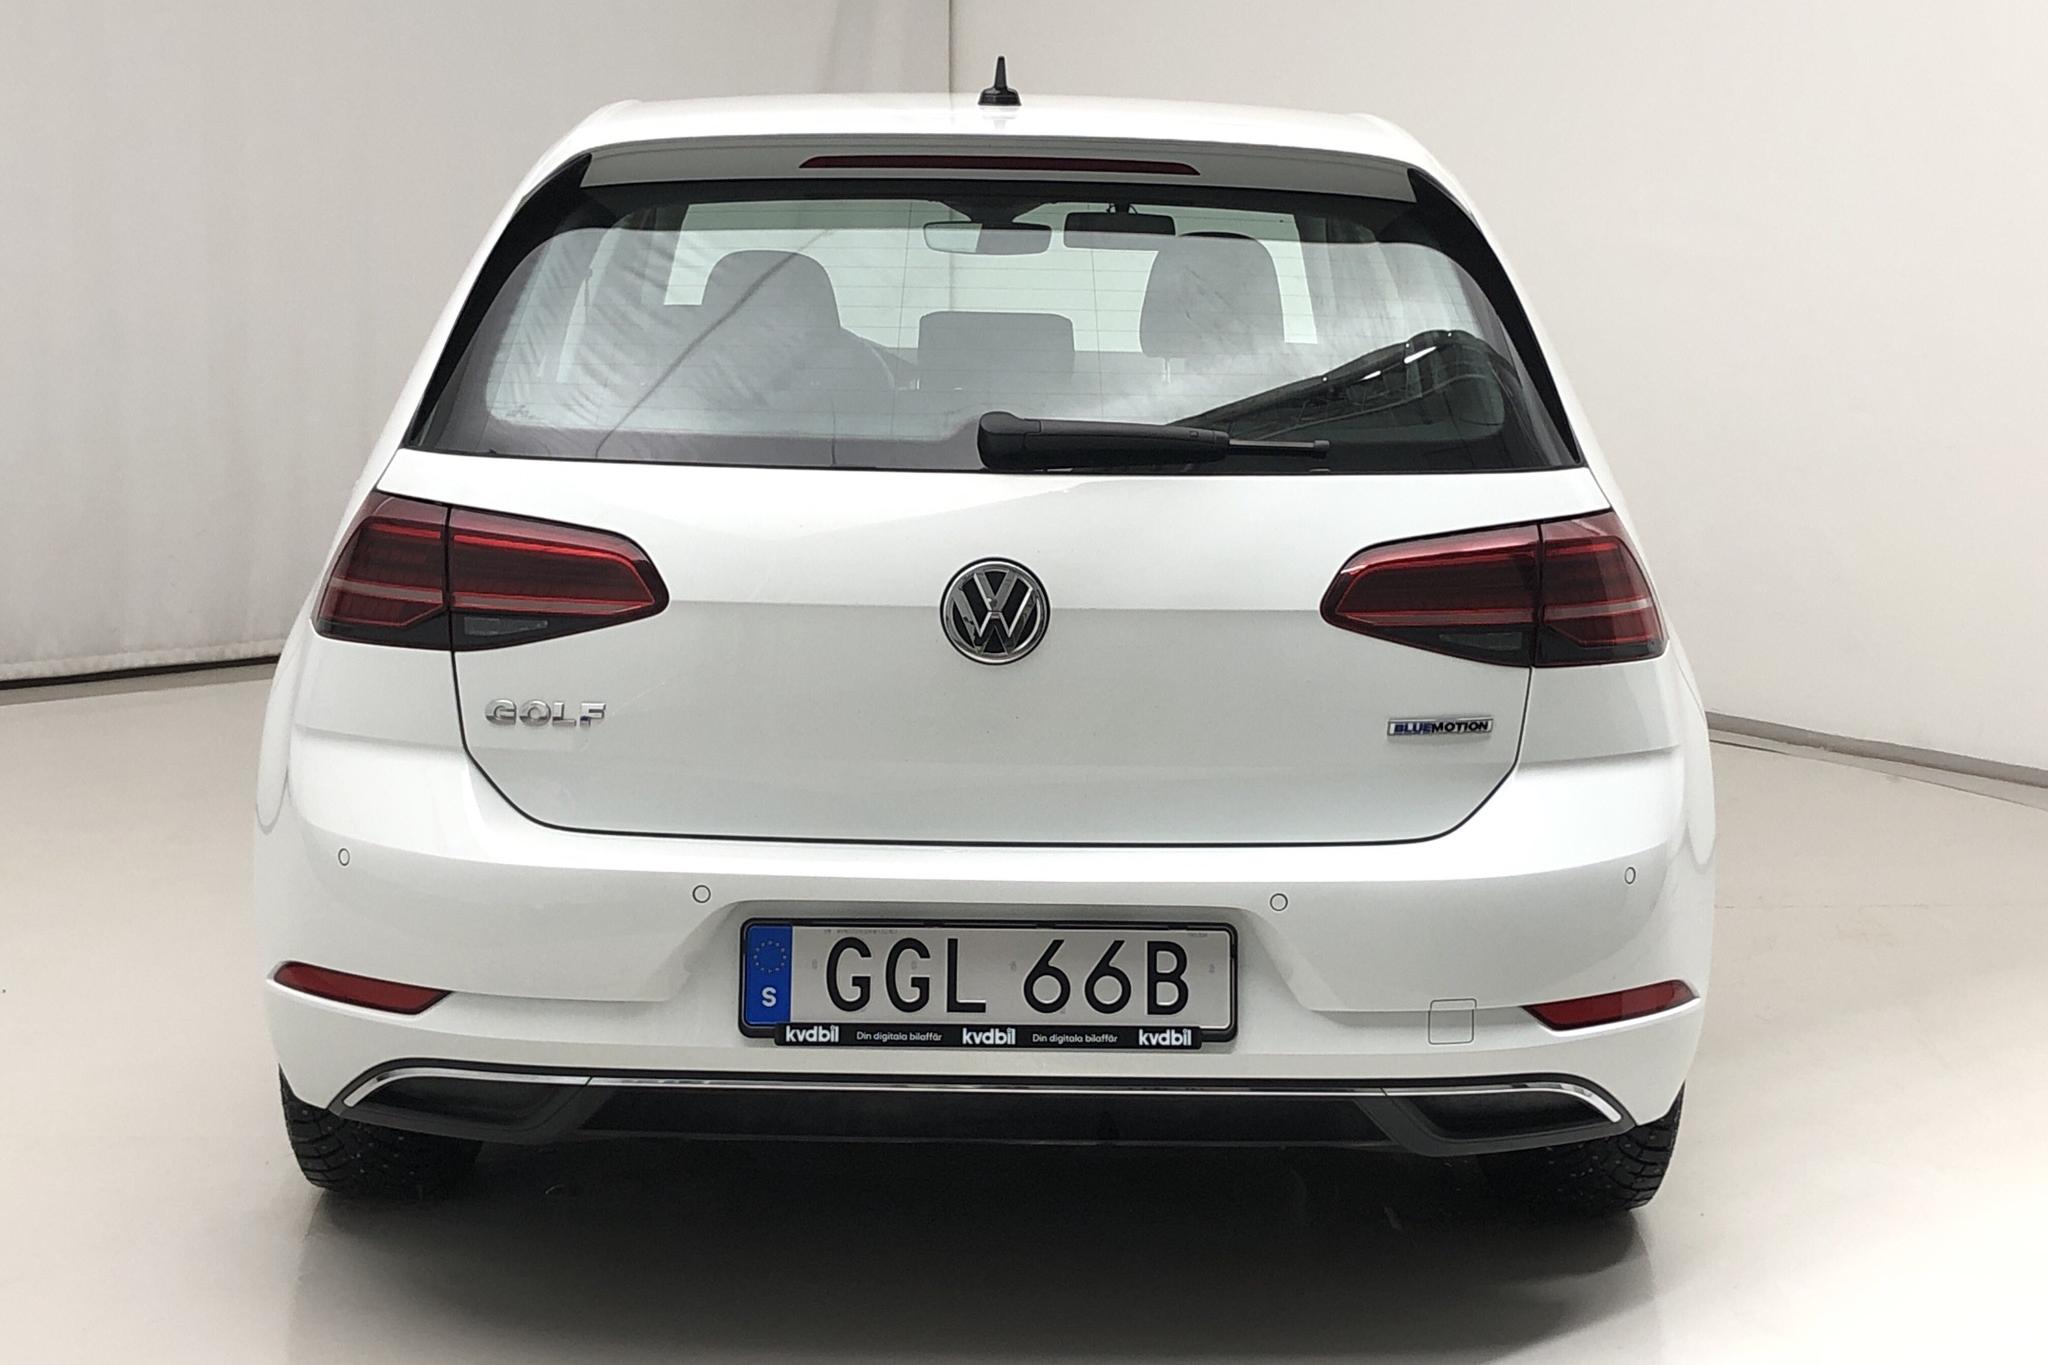 VW Golf VII 1.5 TSI 5dr (130hk) - 79 250 km - Manual - white - 2019